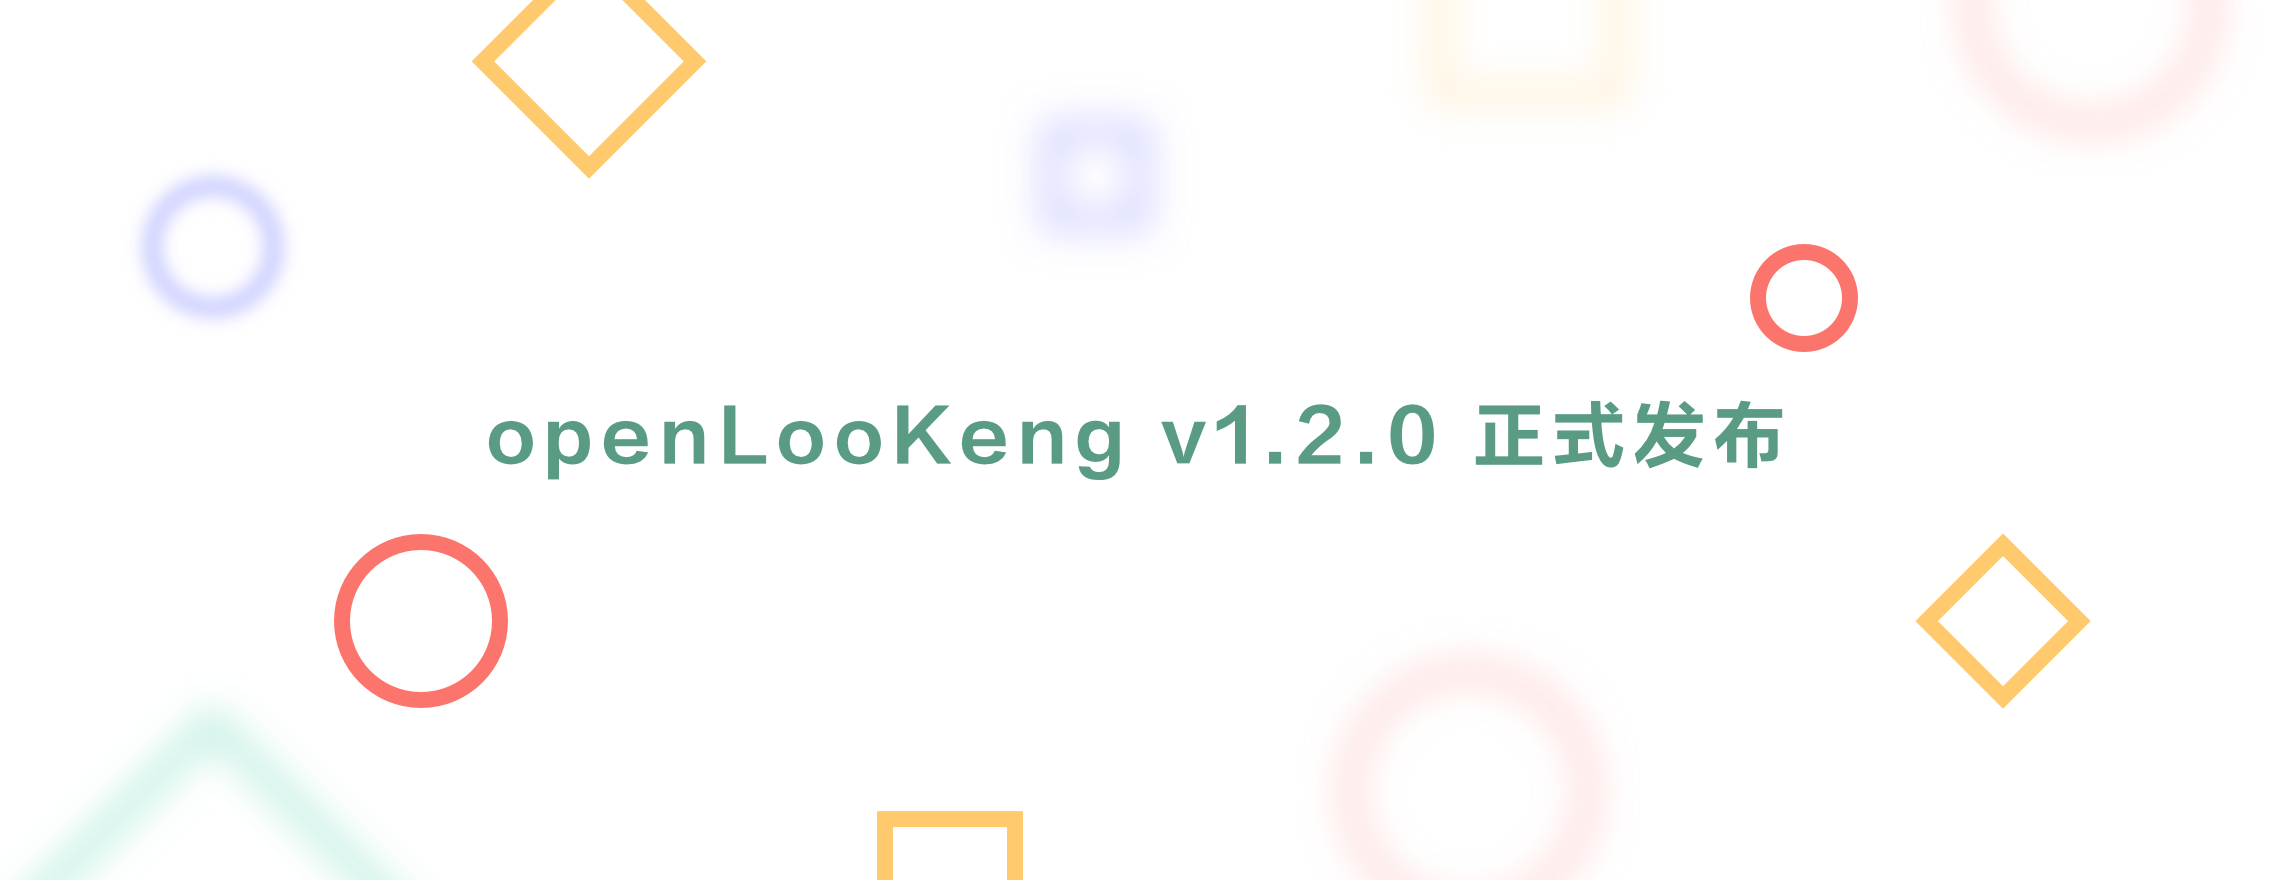 openLooKeng V1.2.0 发布